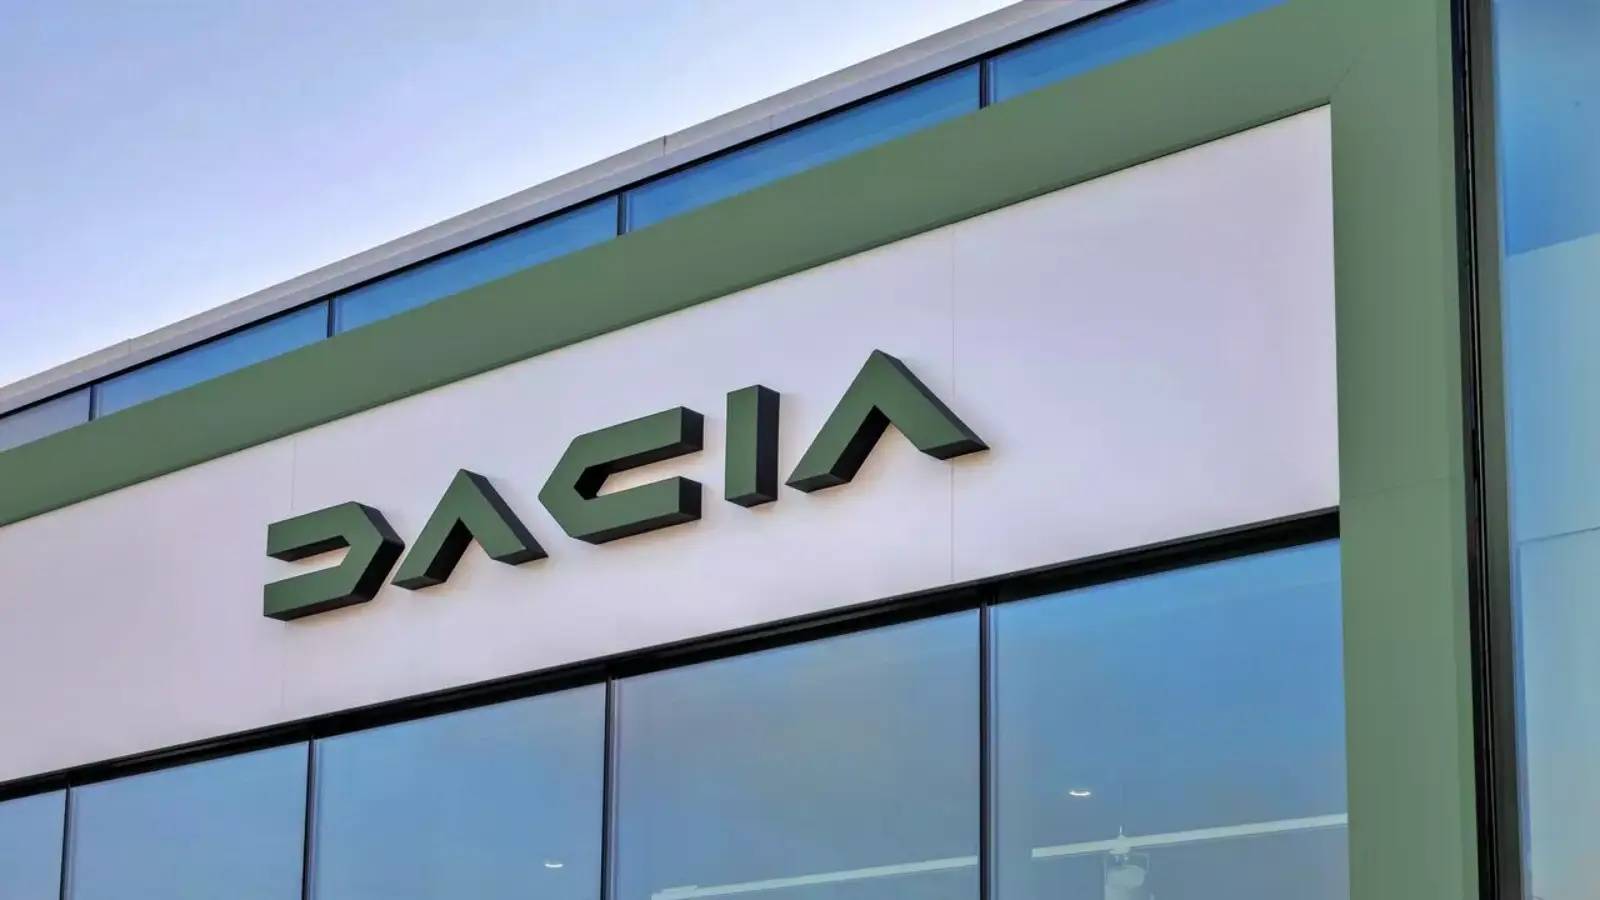 DACIA lanseerasi uusia tuotteita, jotka Yllättävät monet romanialaiset